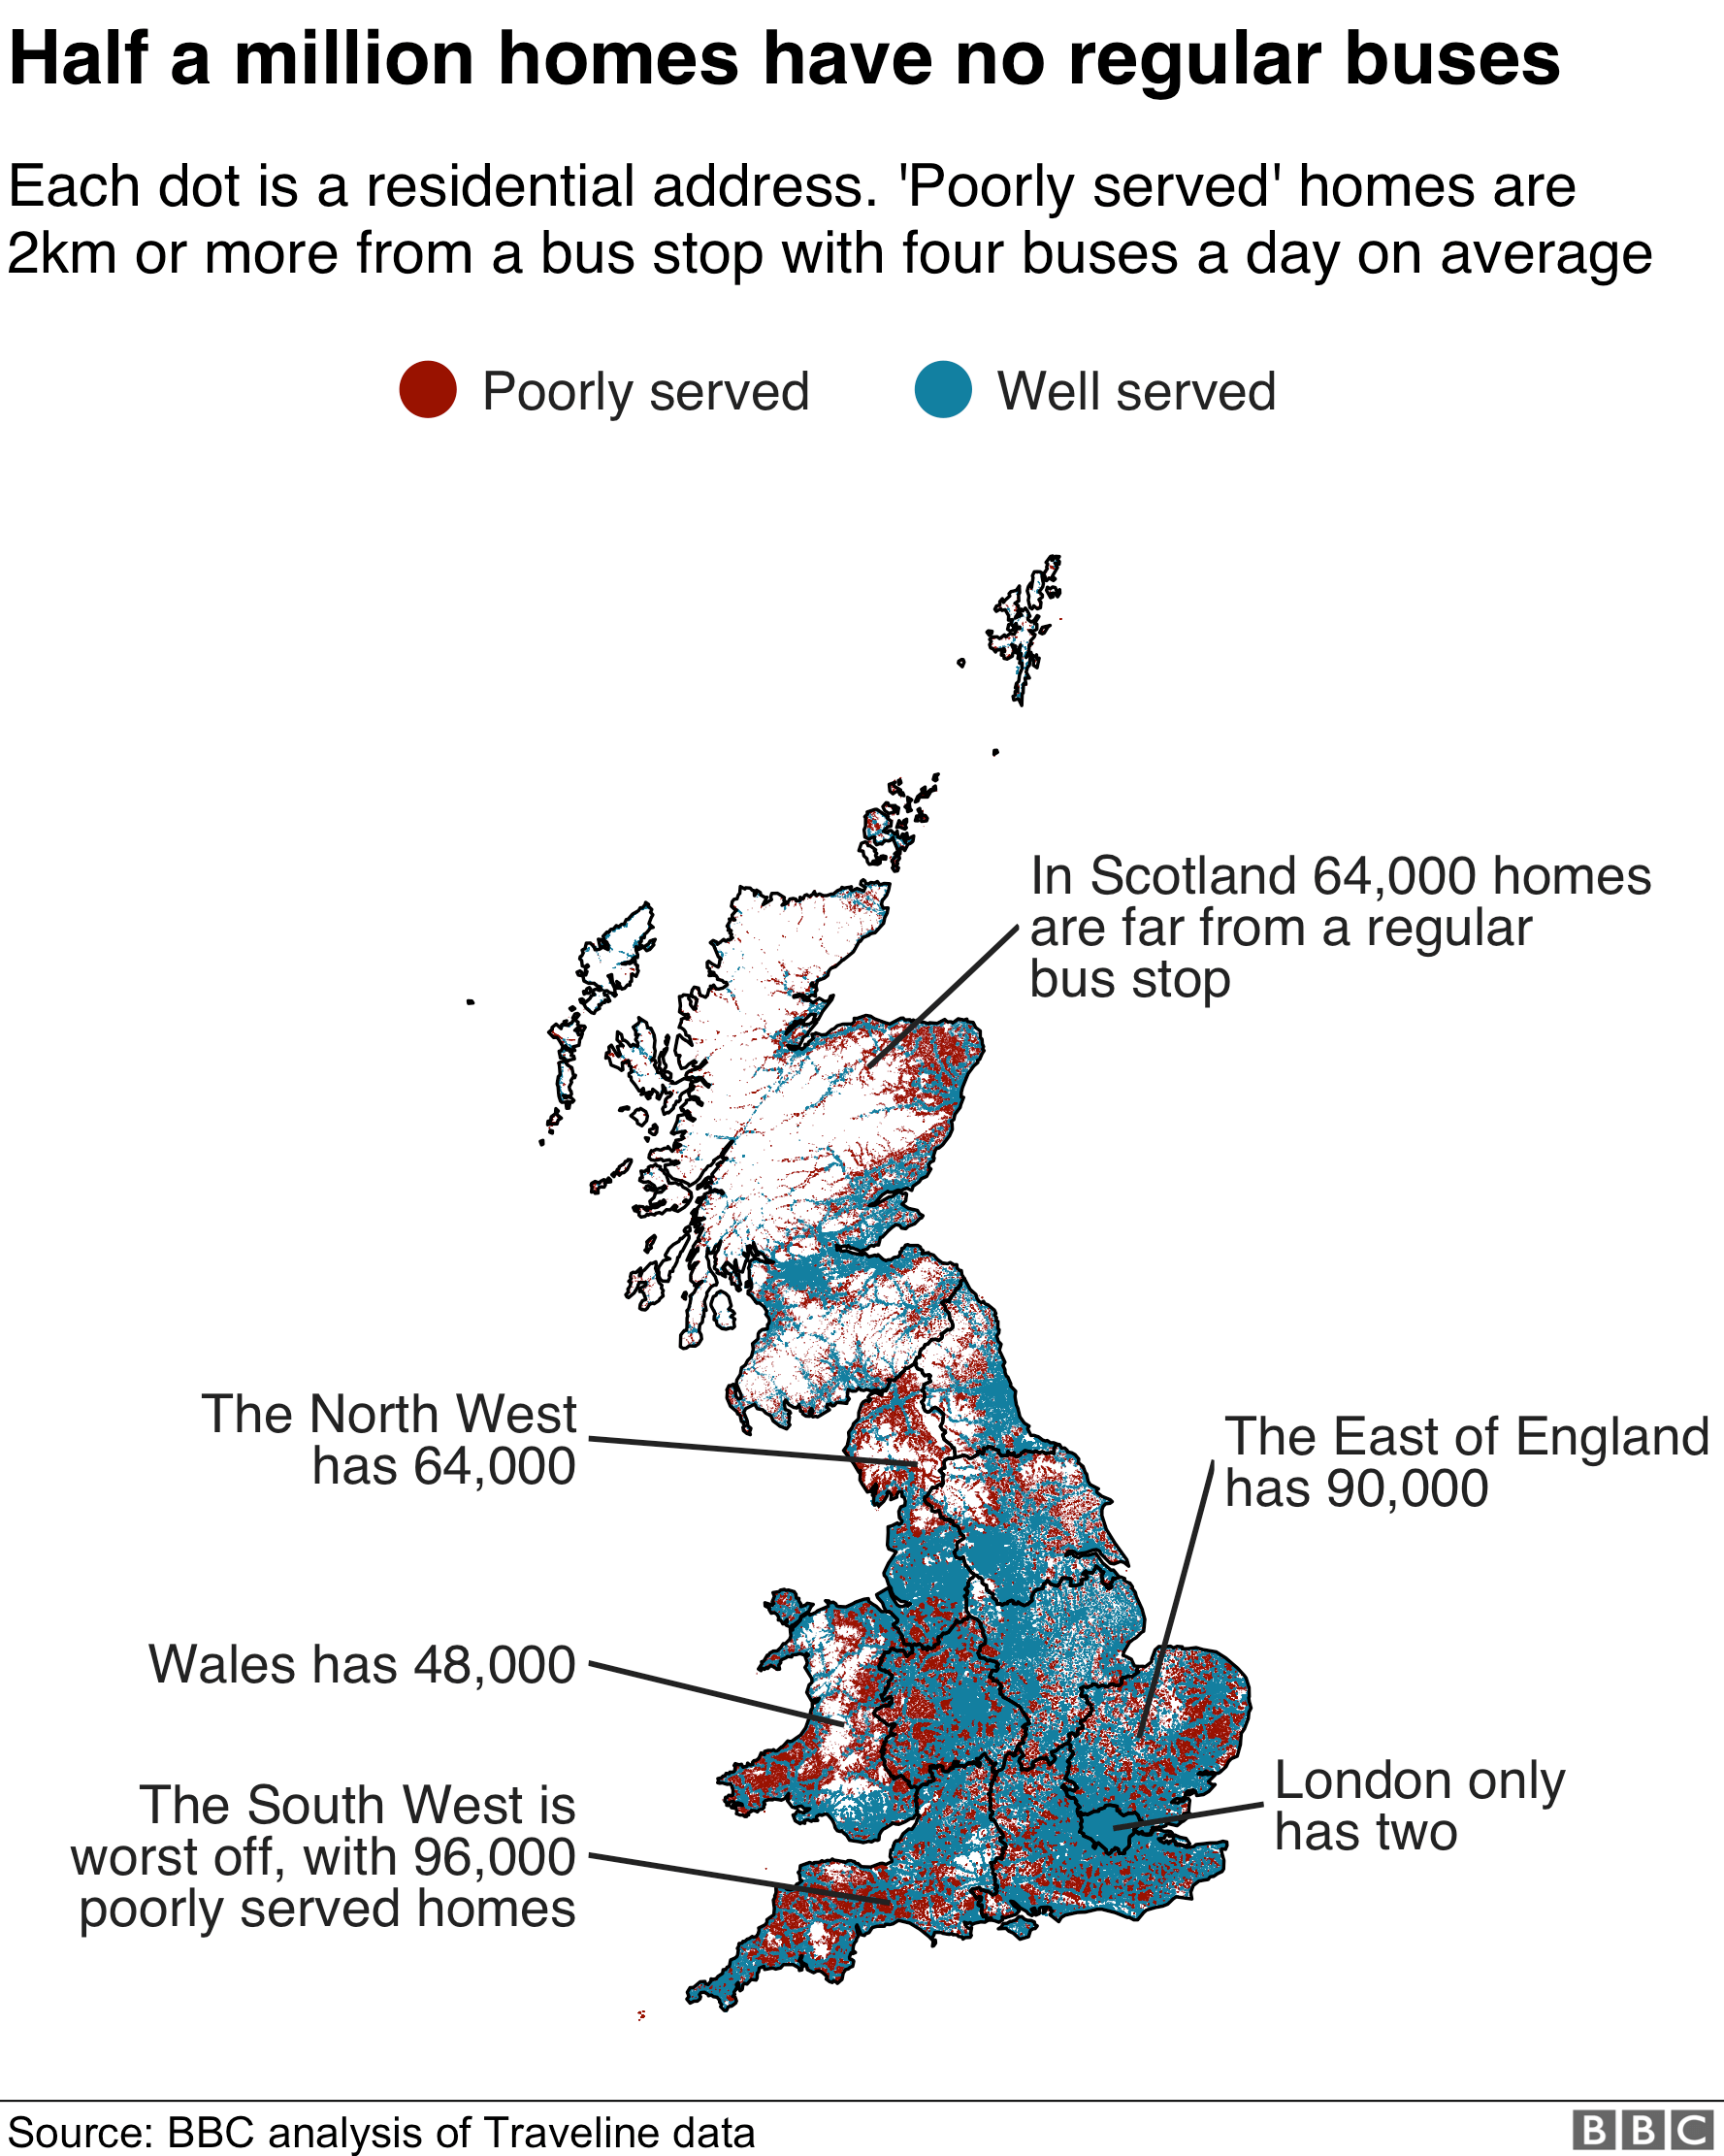 Карта, показывающая районы, где дома не обслуживаются регулярным автобусом